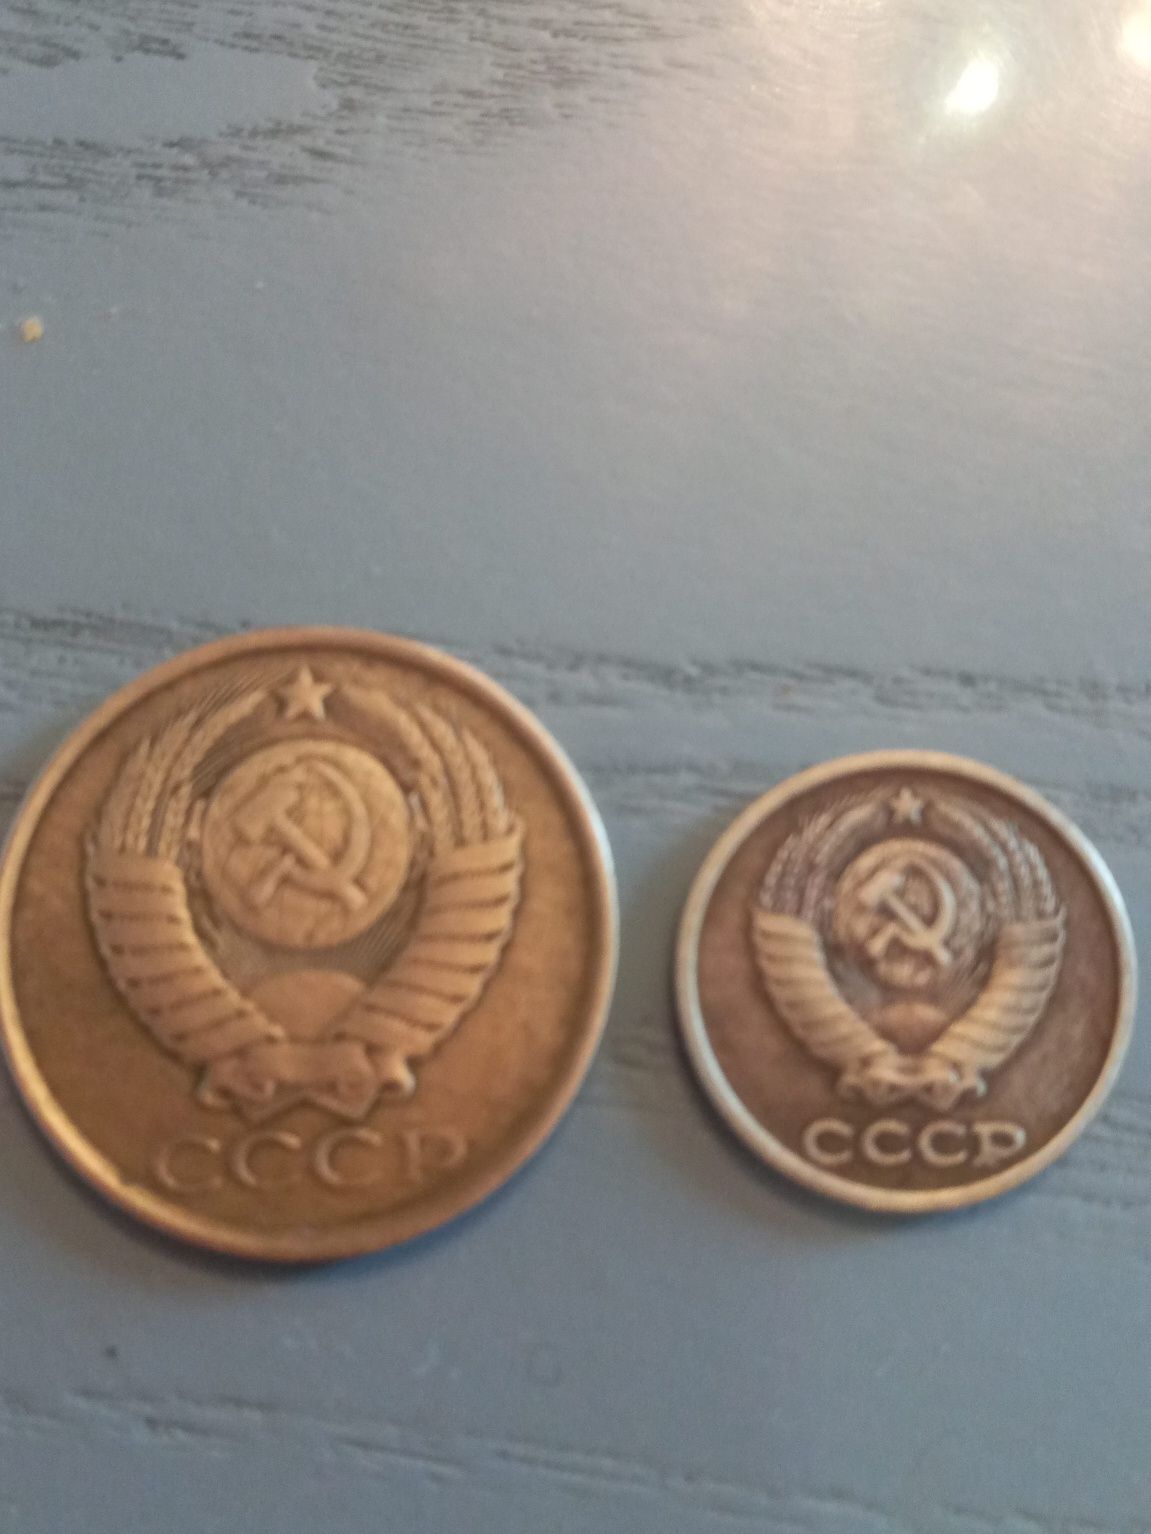 Продам монету 5 копеек 1988года,2 копейки 1987года. В отличном состоян